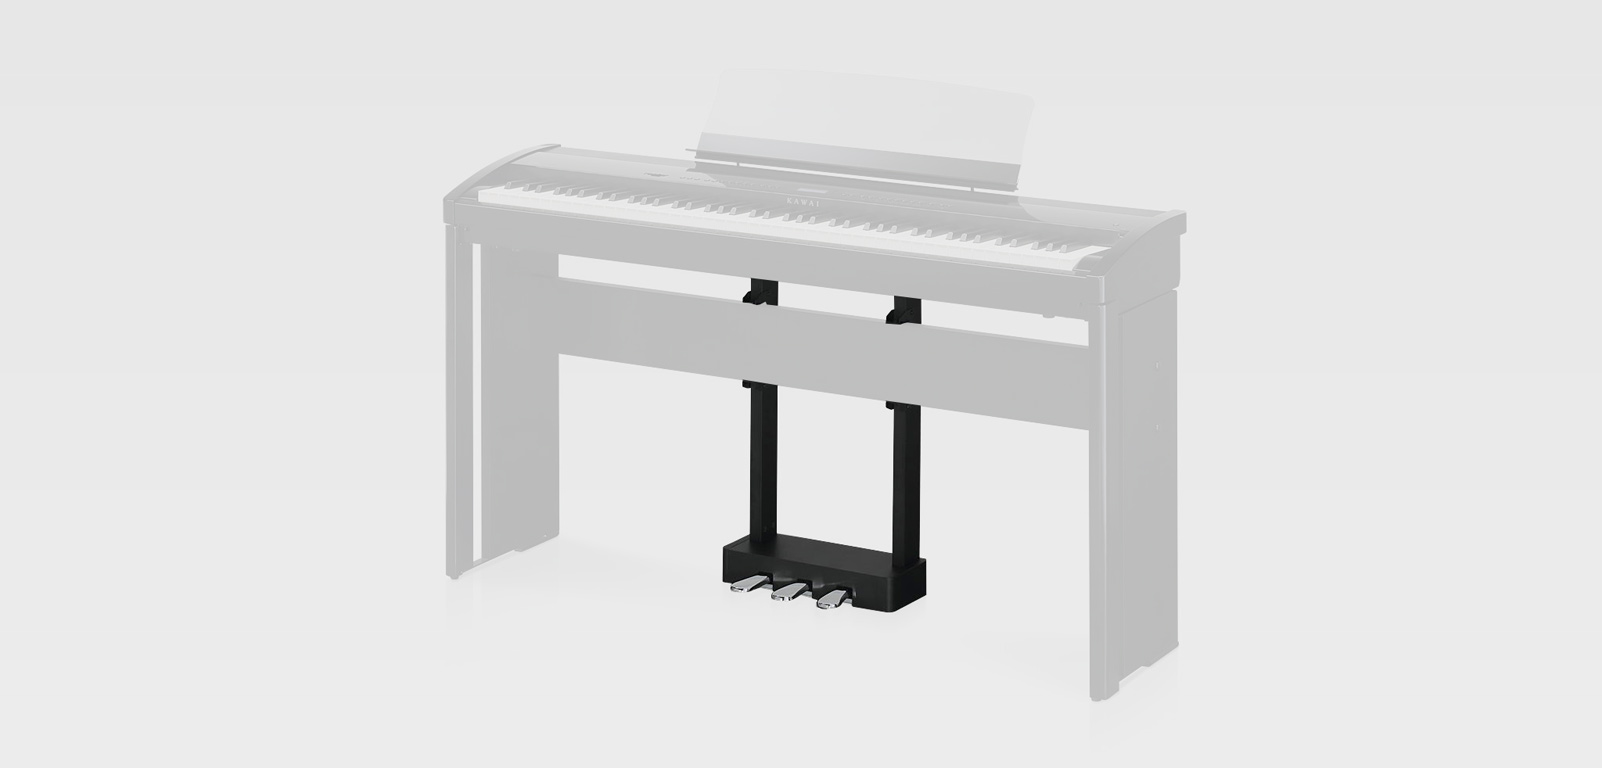 Kawai F-301B педальный блок (3 педали) для цифрового пианино ES7B, ES8B. Цвет черный